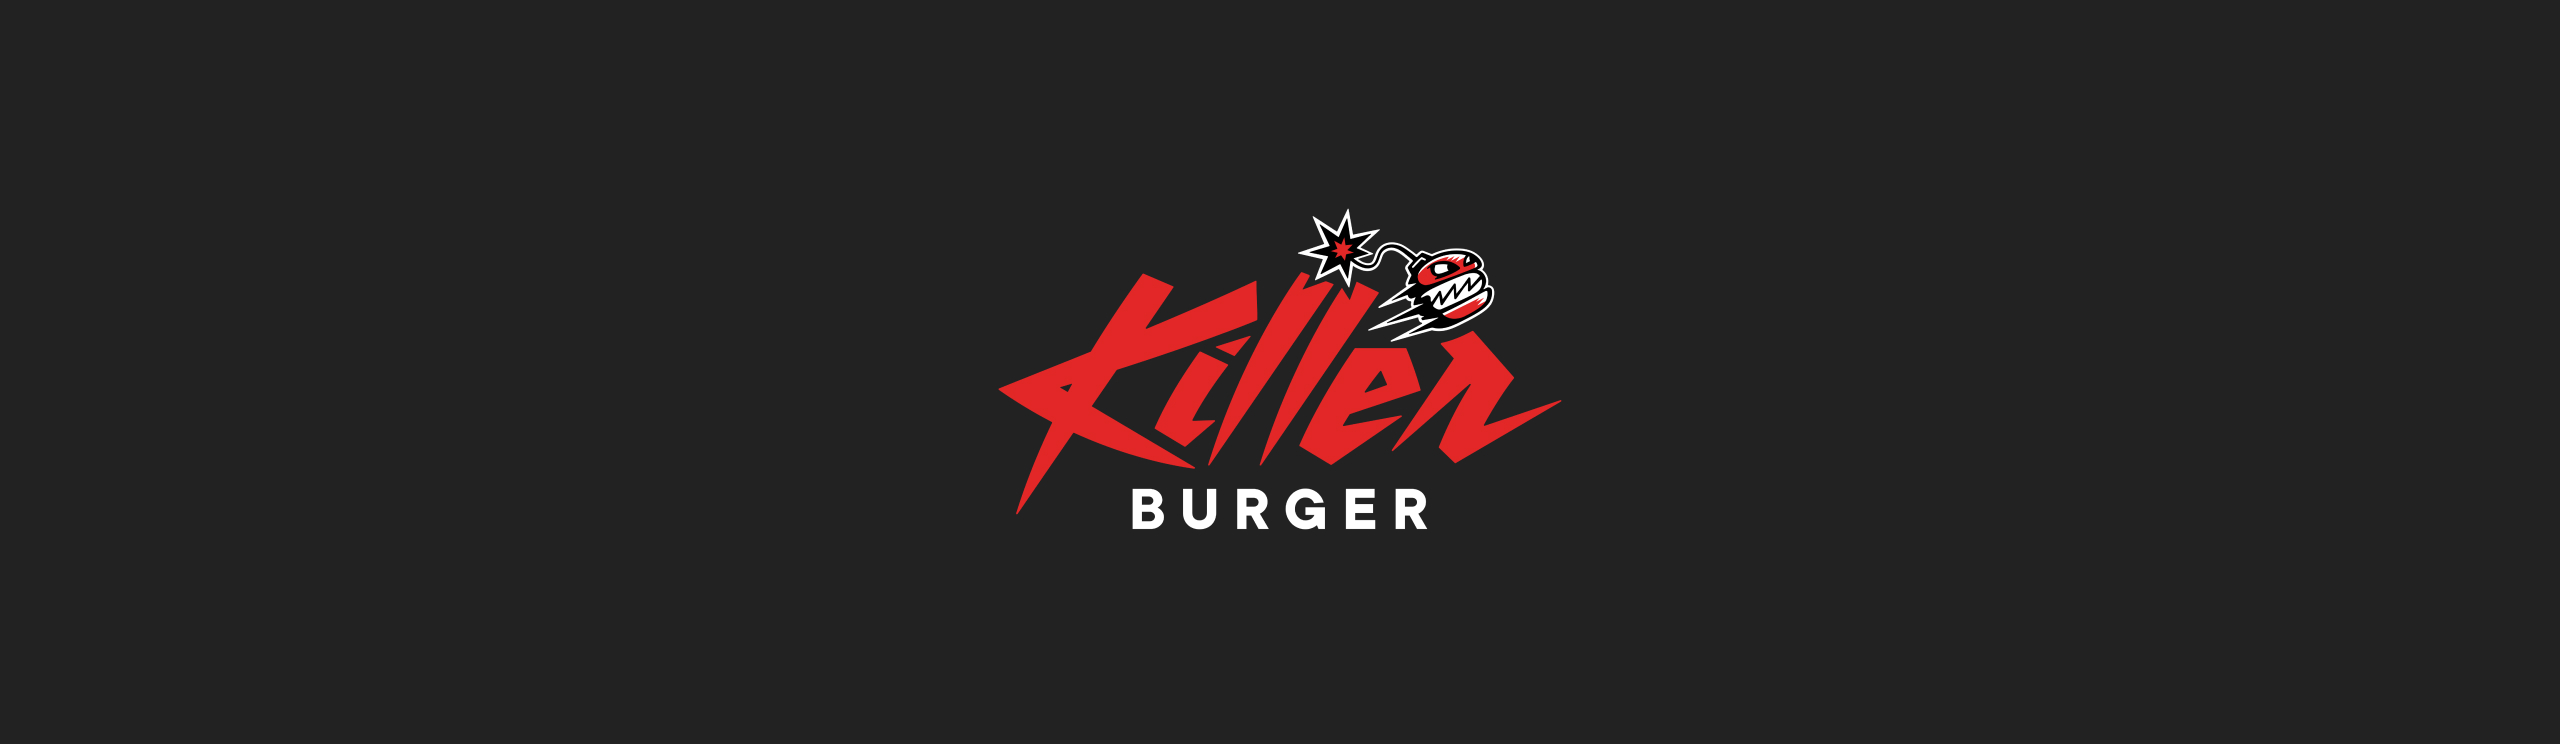 Killer Burger Banner